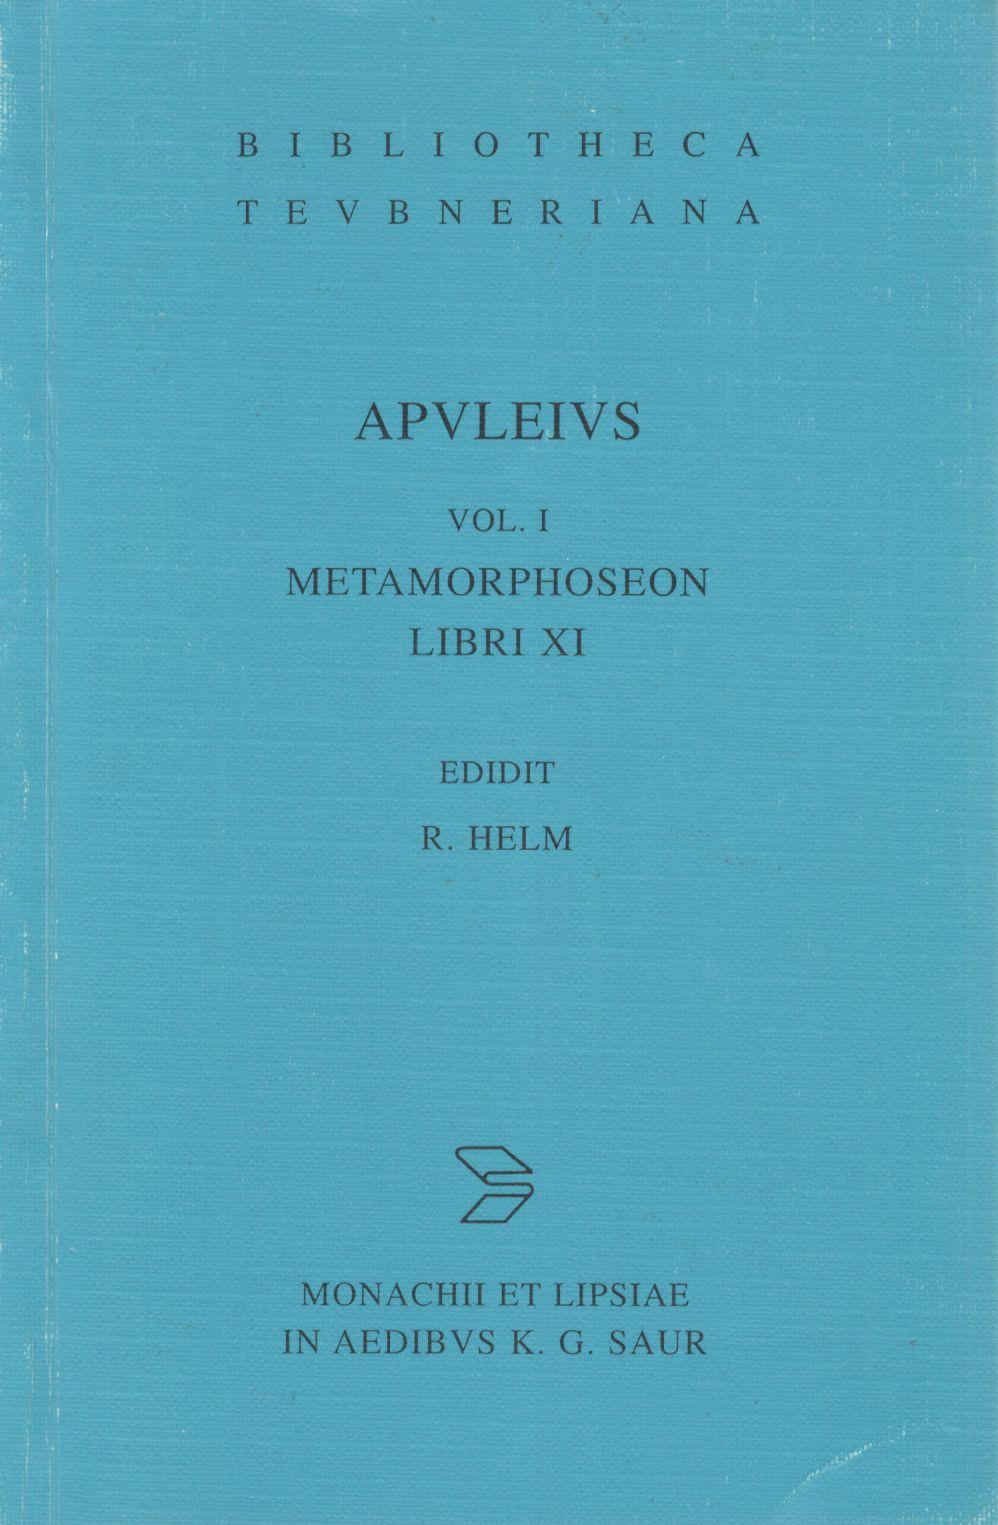 APULEIUS PLATONICUS MADAURENSIS OPERA QUAE SUPERSUNT METAMORPHOSEON LIBRI XI VOL. I 